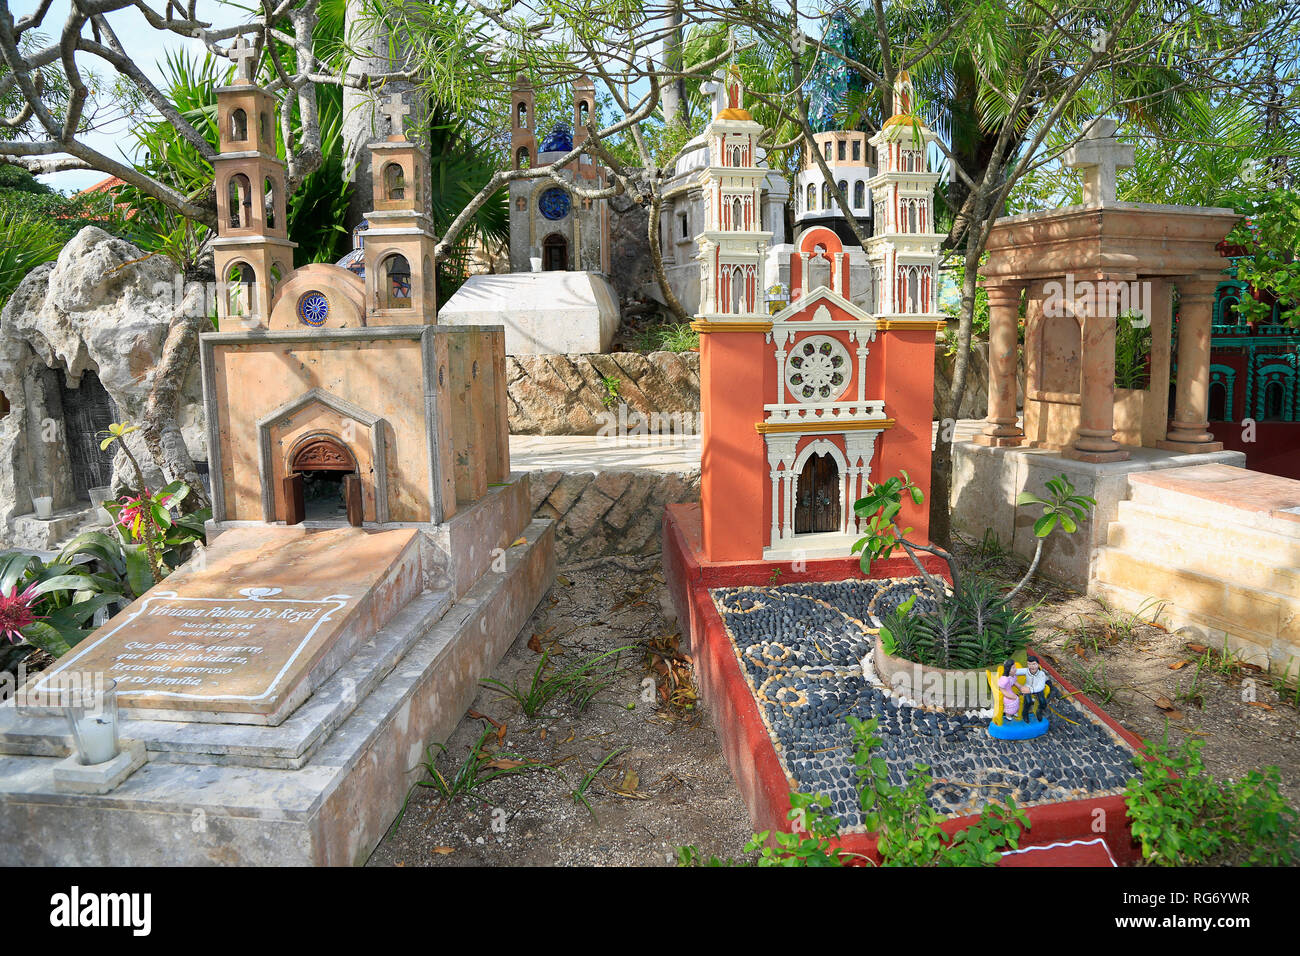 Cimetière traditionnel musée en plein air dans le village Maya Xcaret, parc d'attraction. Est un bon exemple de la fusion entre l'influence espagnole et Maya Banque D'Images